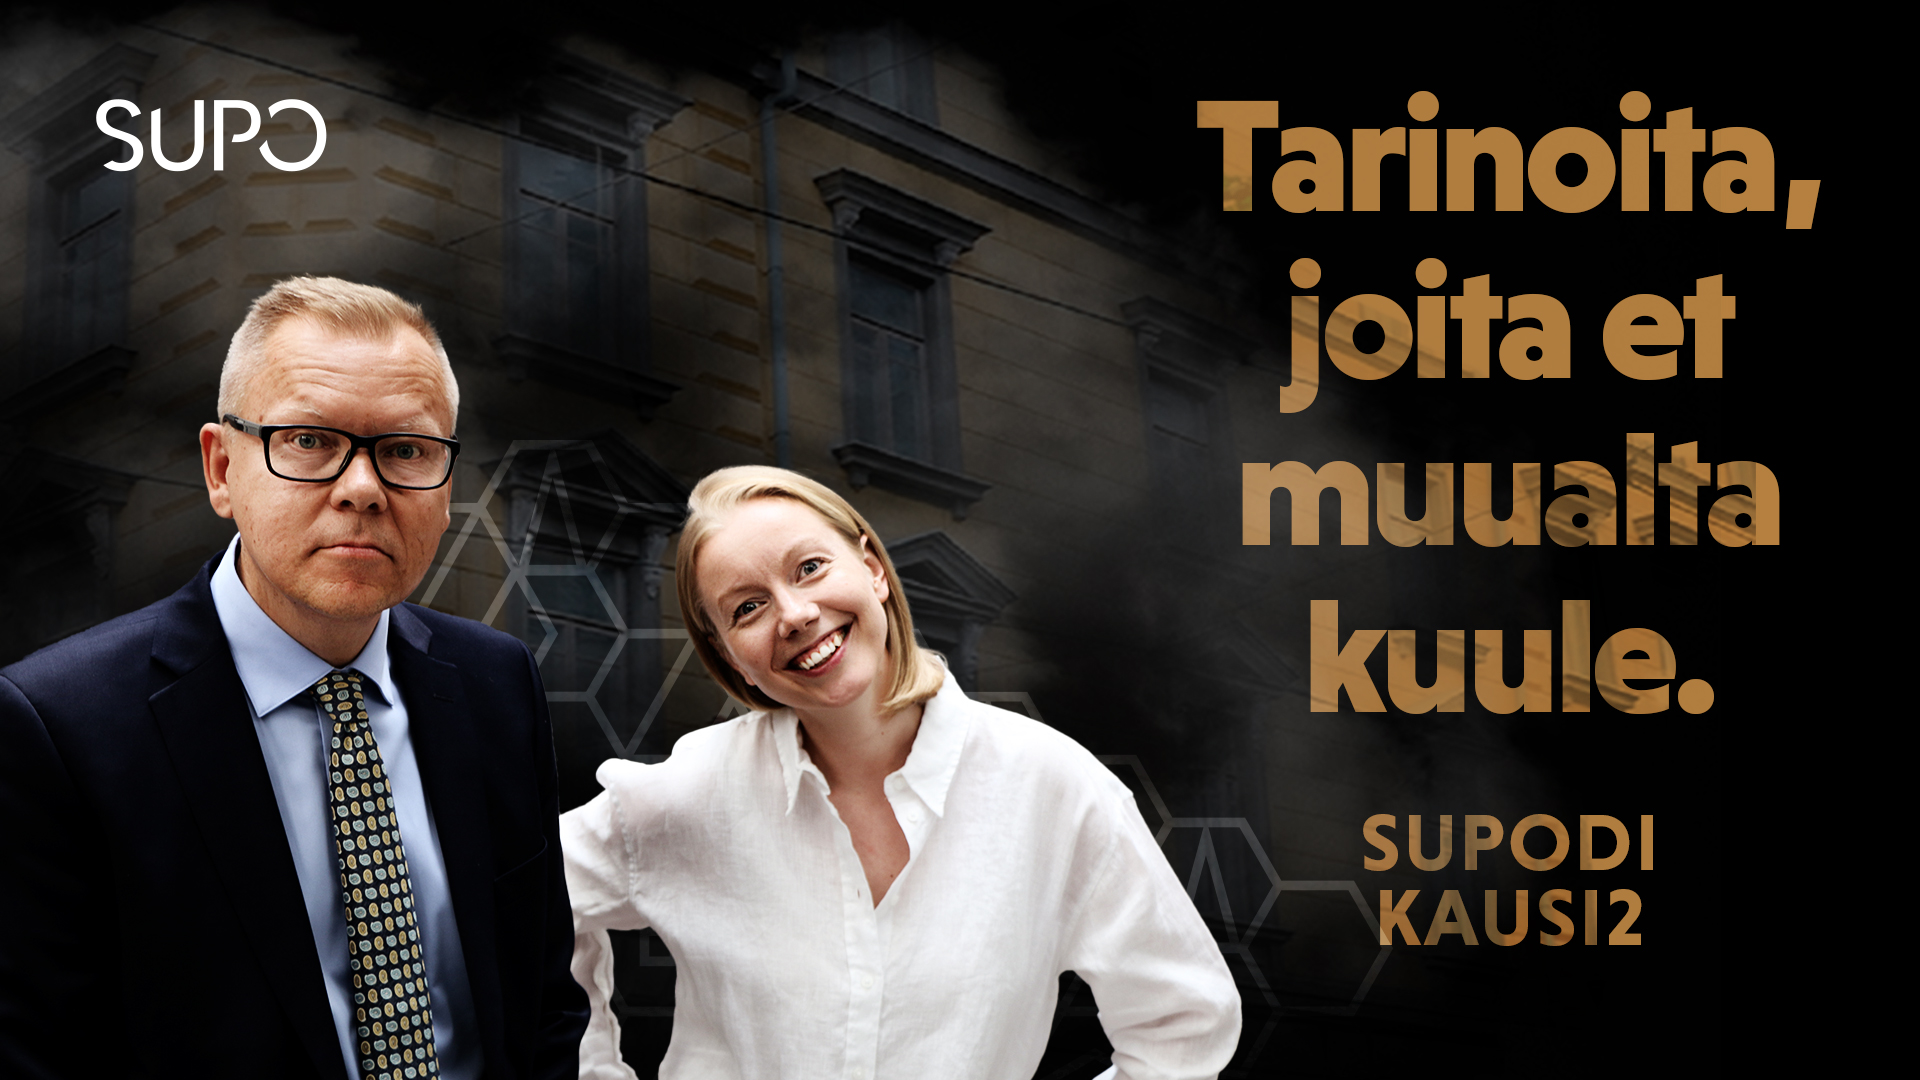 Supodin kansikuva, jossa ovat haastattelijat Jyri Rantala ja Saana Nilsson.